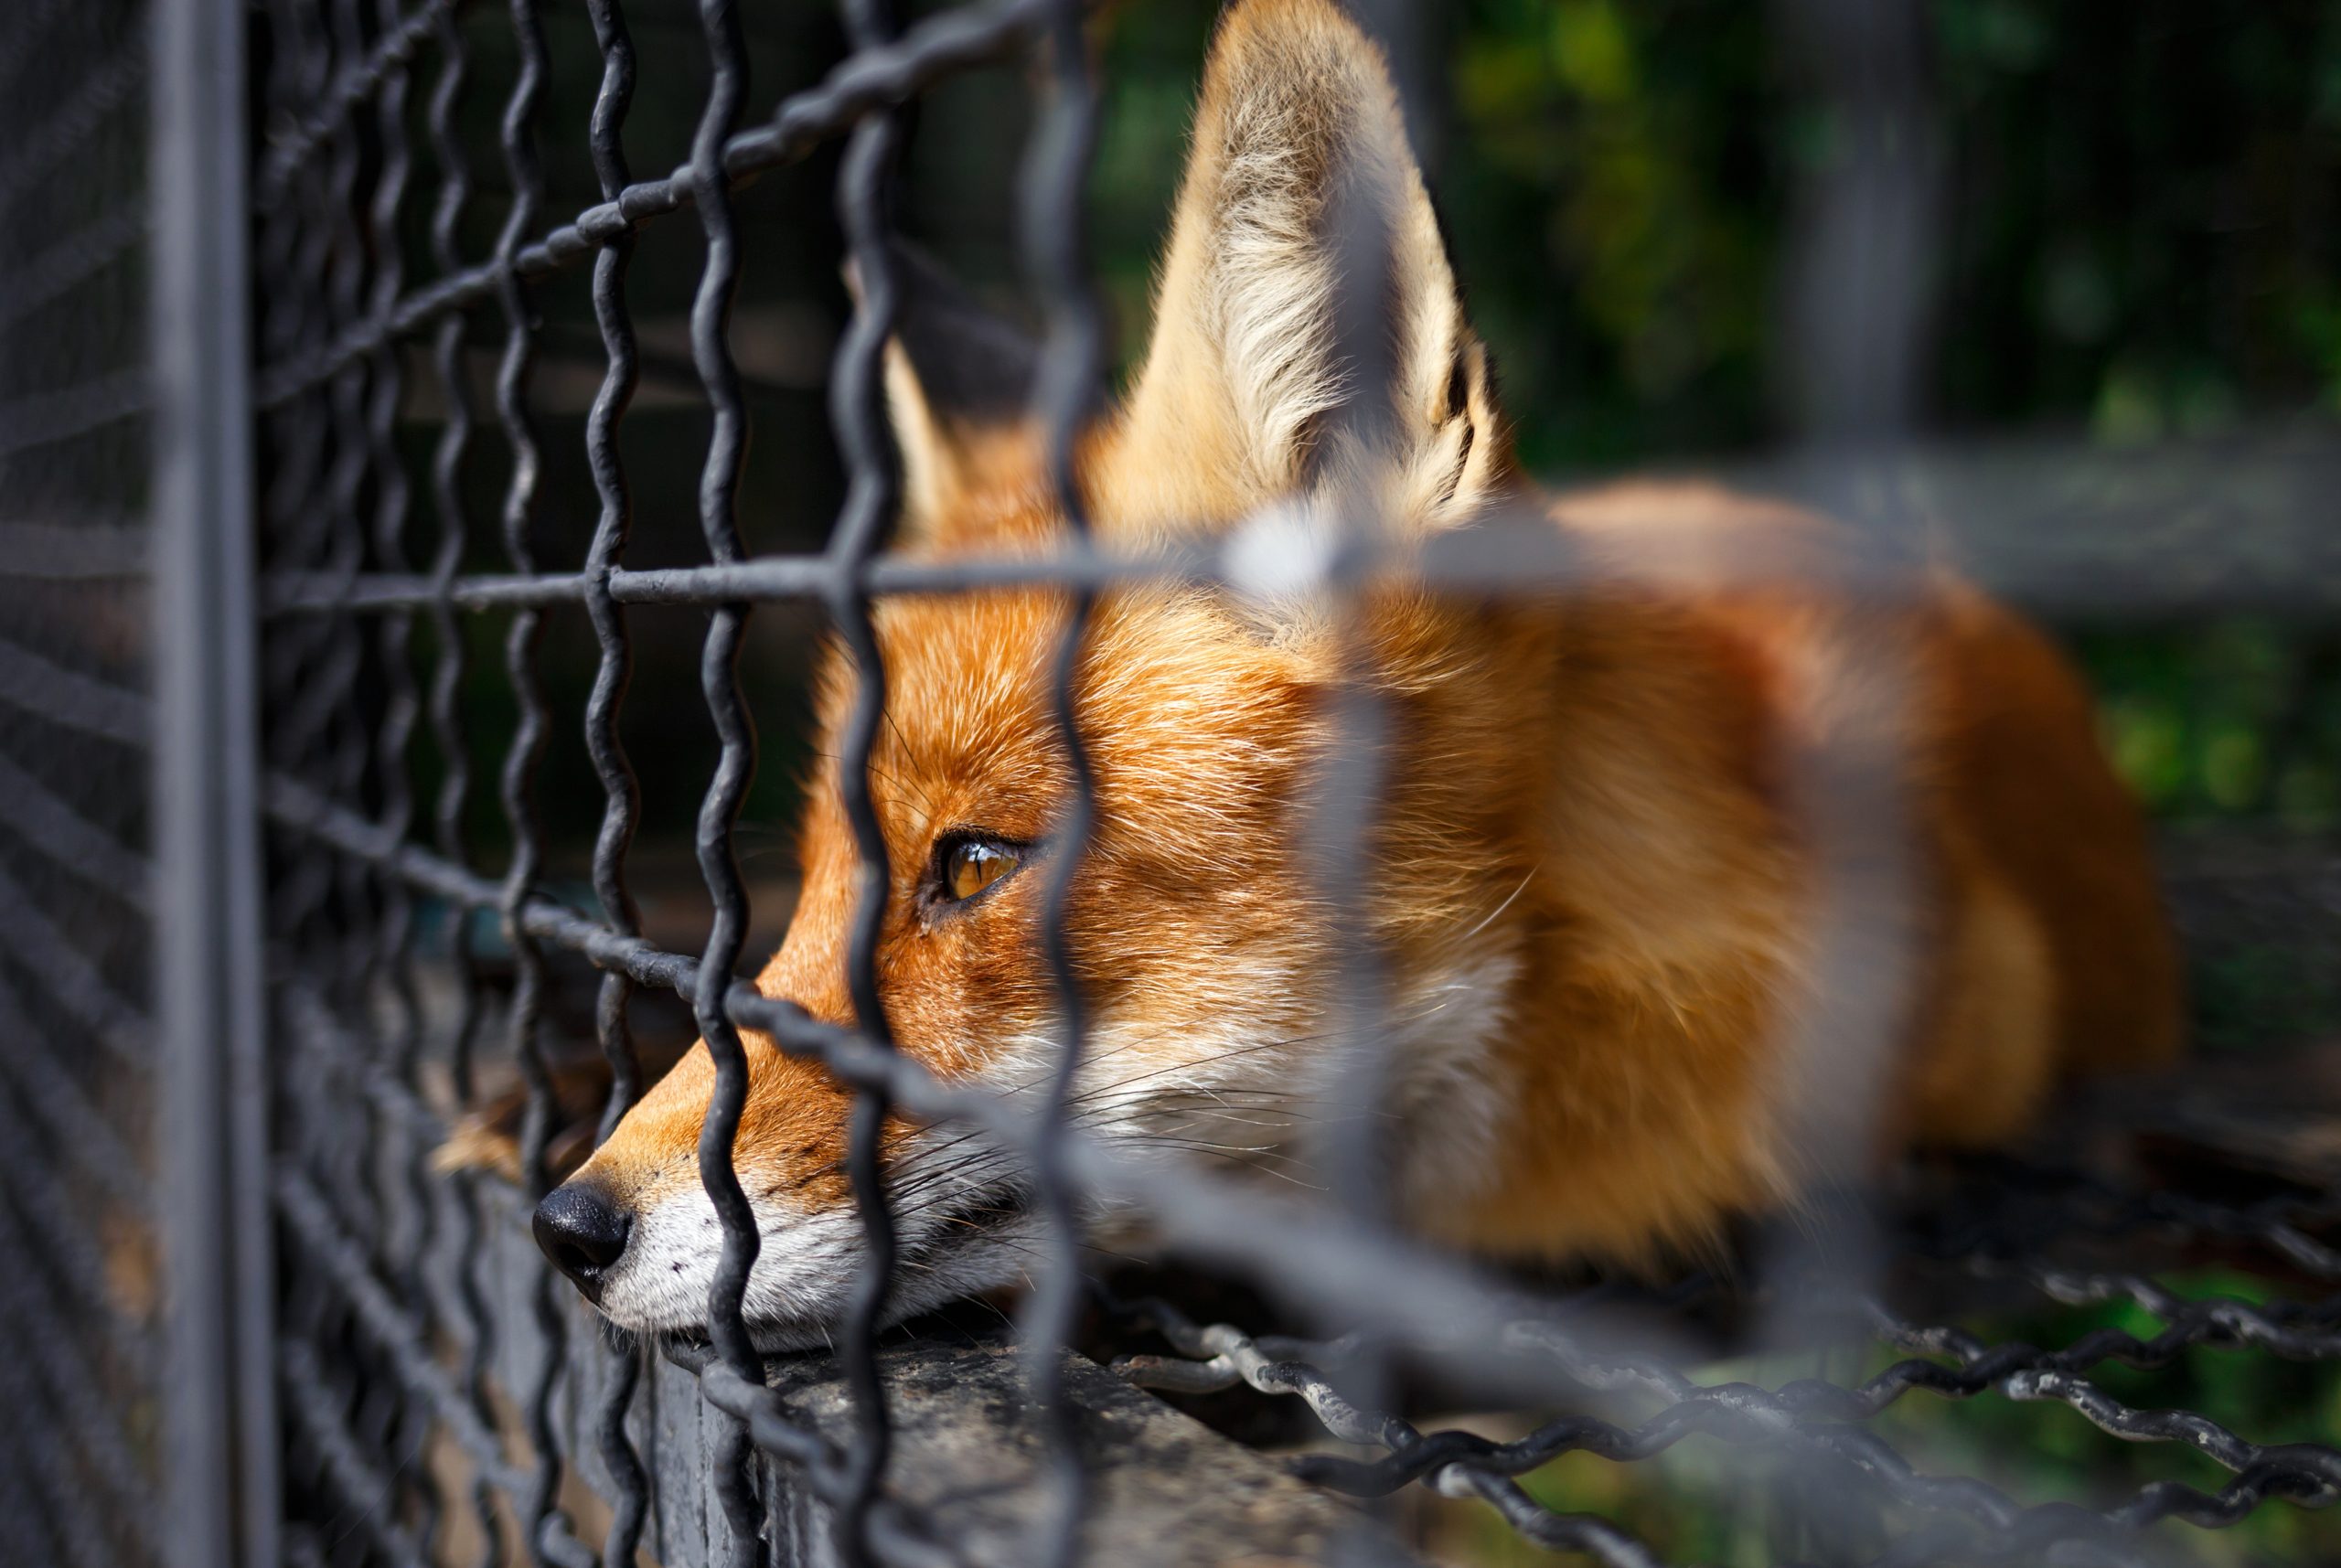 traurig guckender Fuchs in einem Käfig